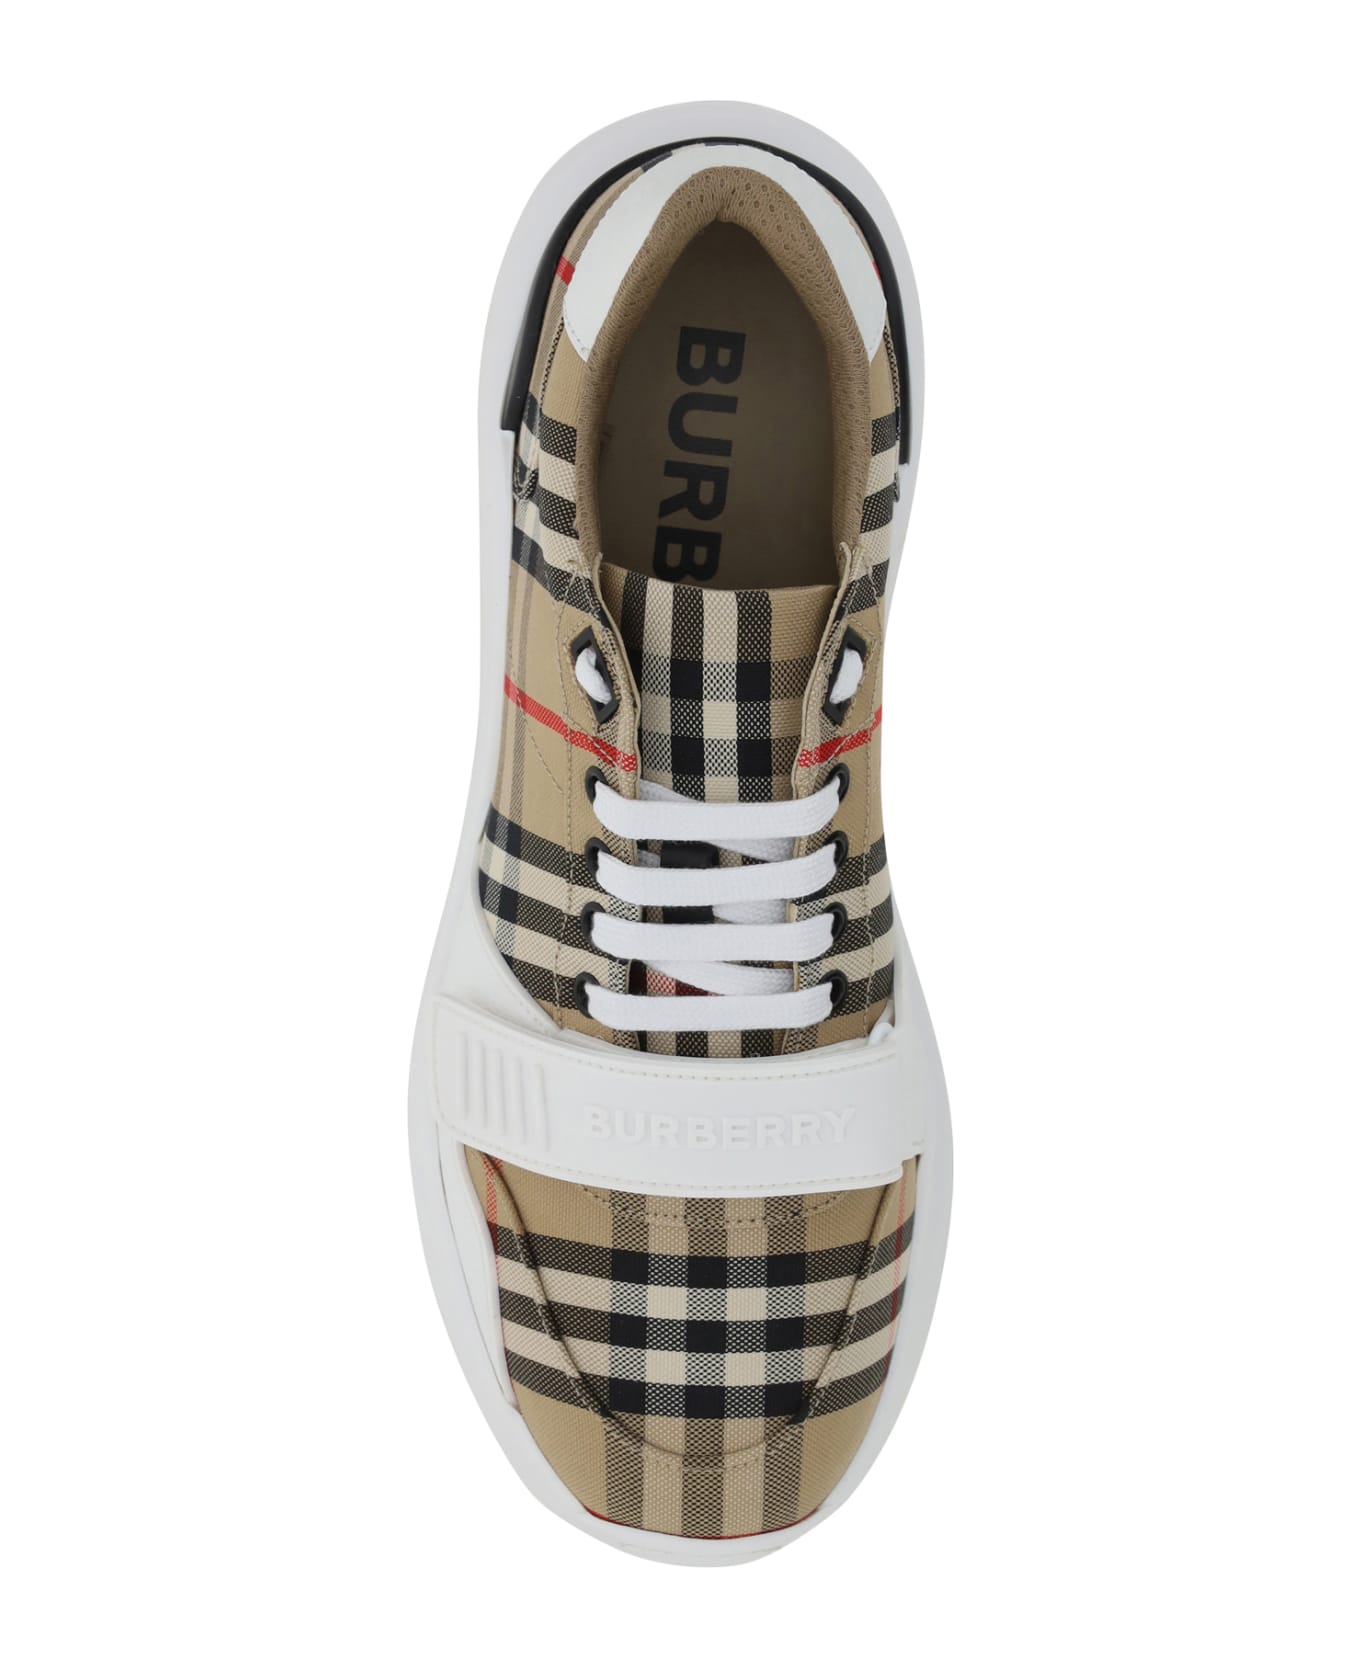 Burberry New Regis Sneakers - Beige